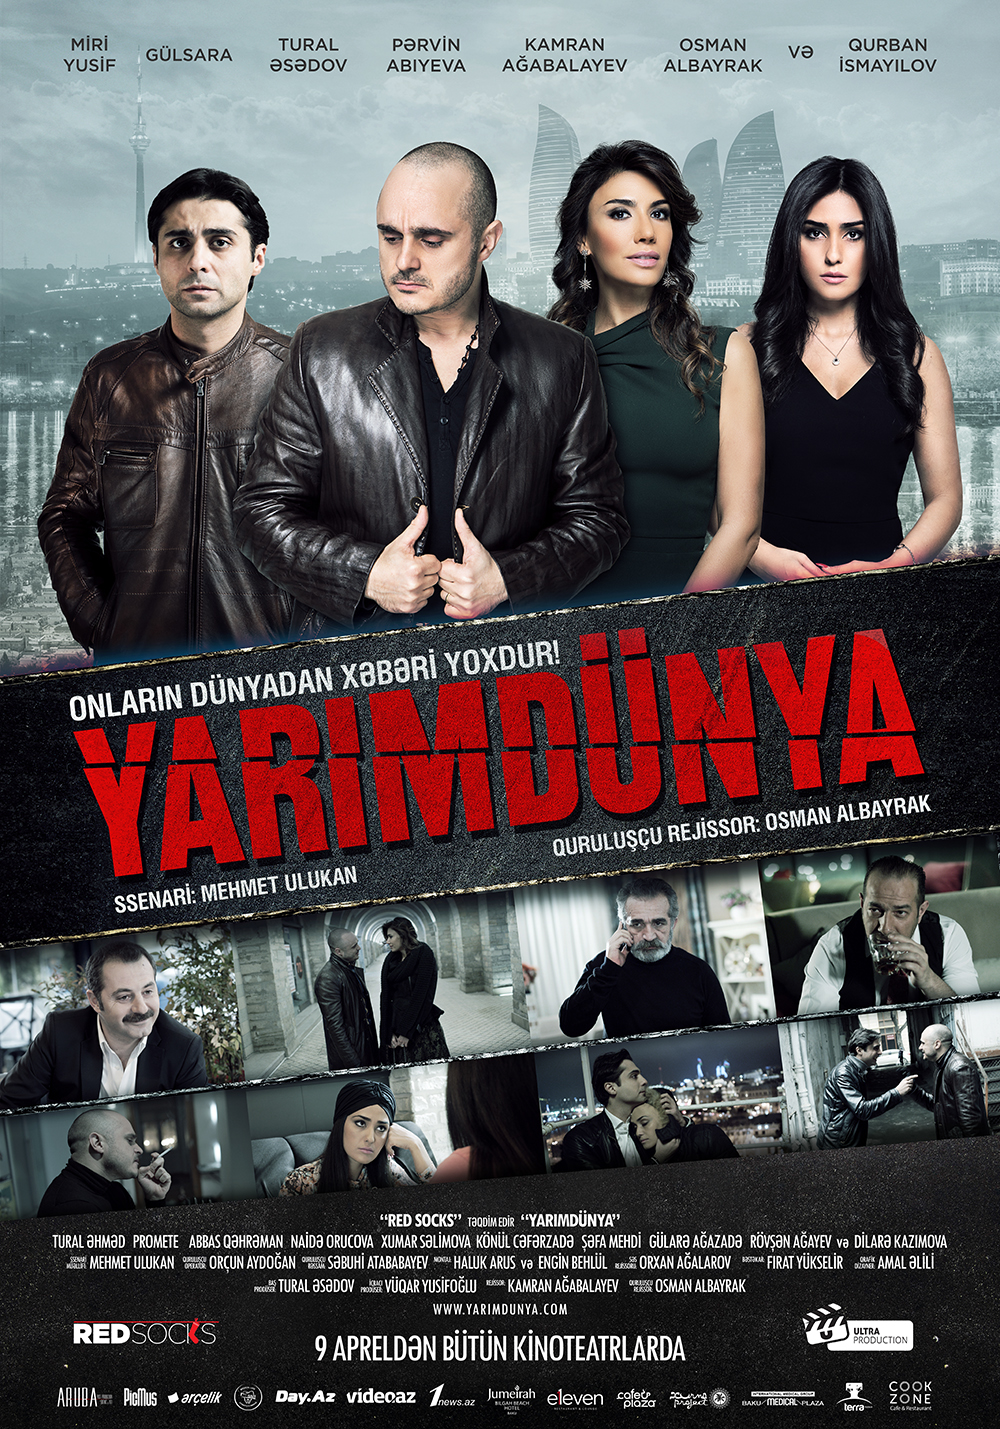 yarimdunya movie poster azerbaijan baku miriyusif amalalili #Design Ps25Under25